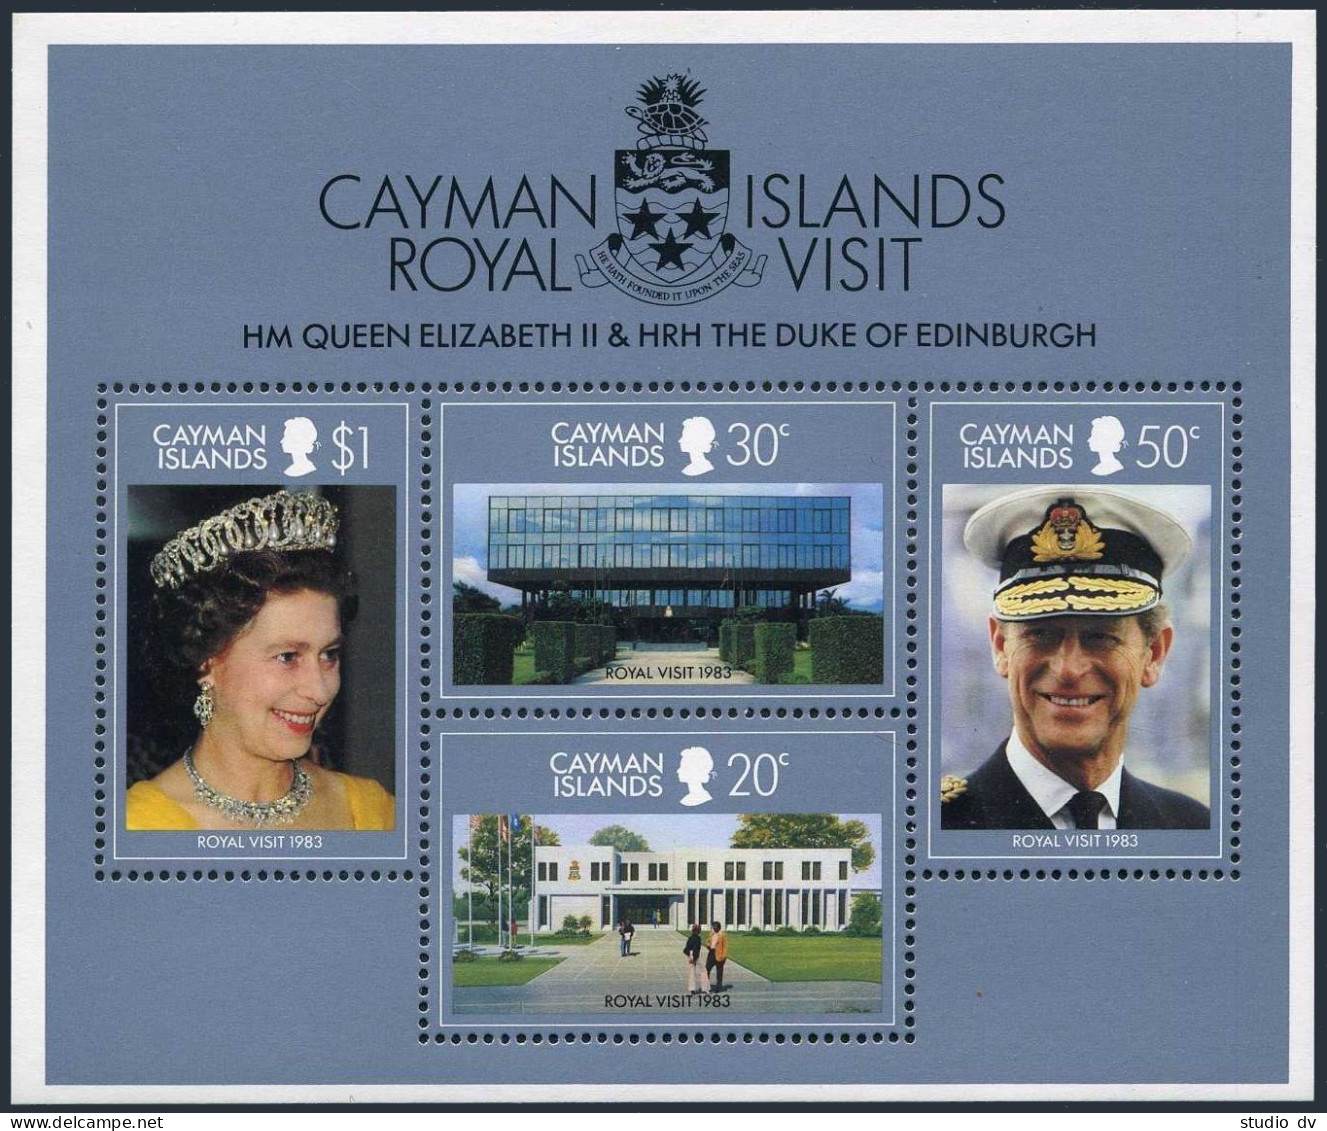 Cayman 506-509,509a, MNH. Mi 510-513, Bl.14. Visit Of QE II, Prince Philip,1983. - Kaimaninseln